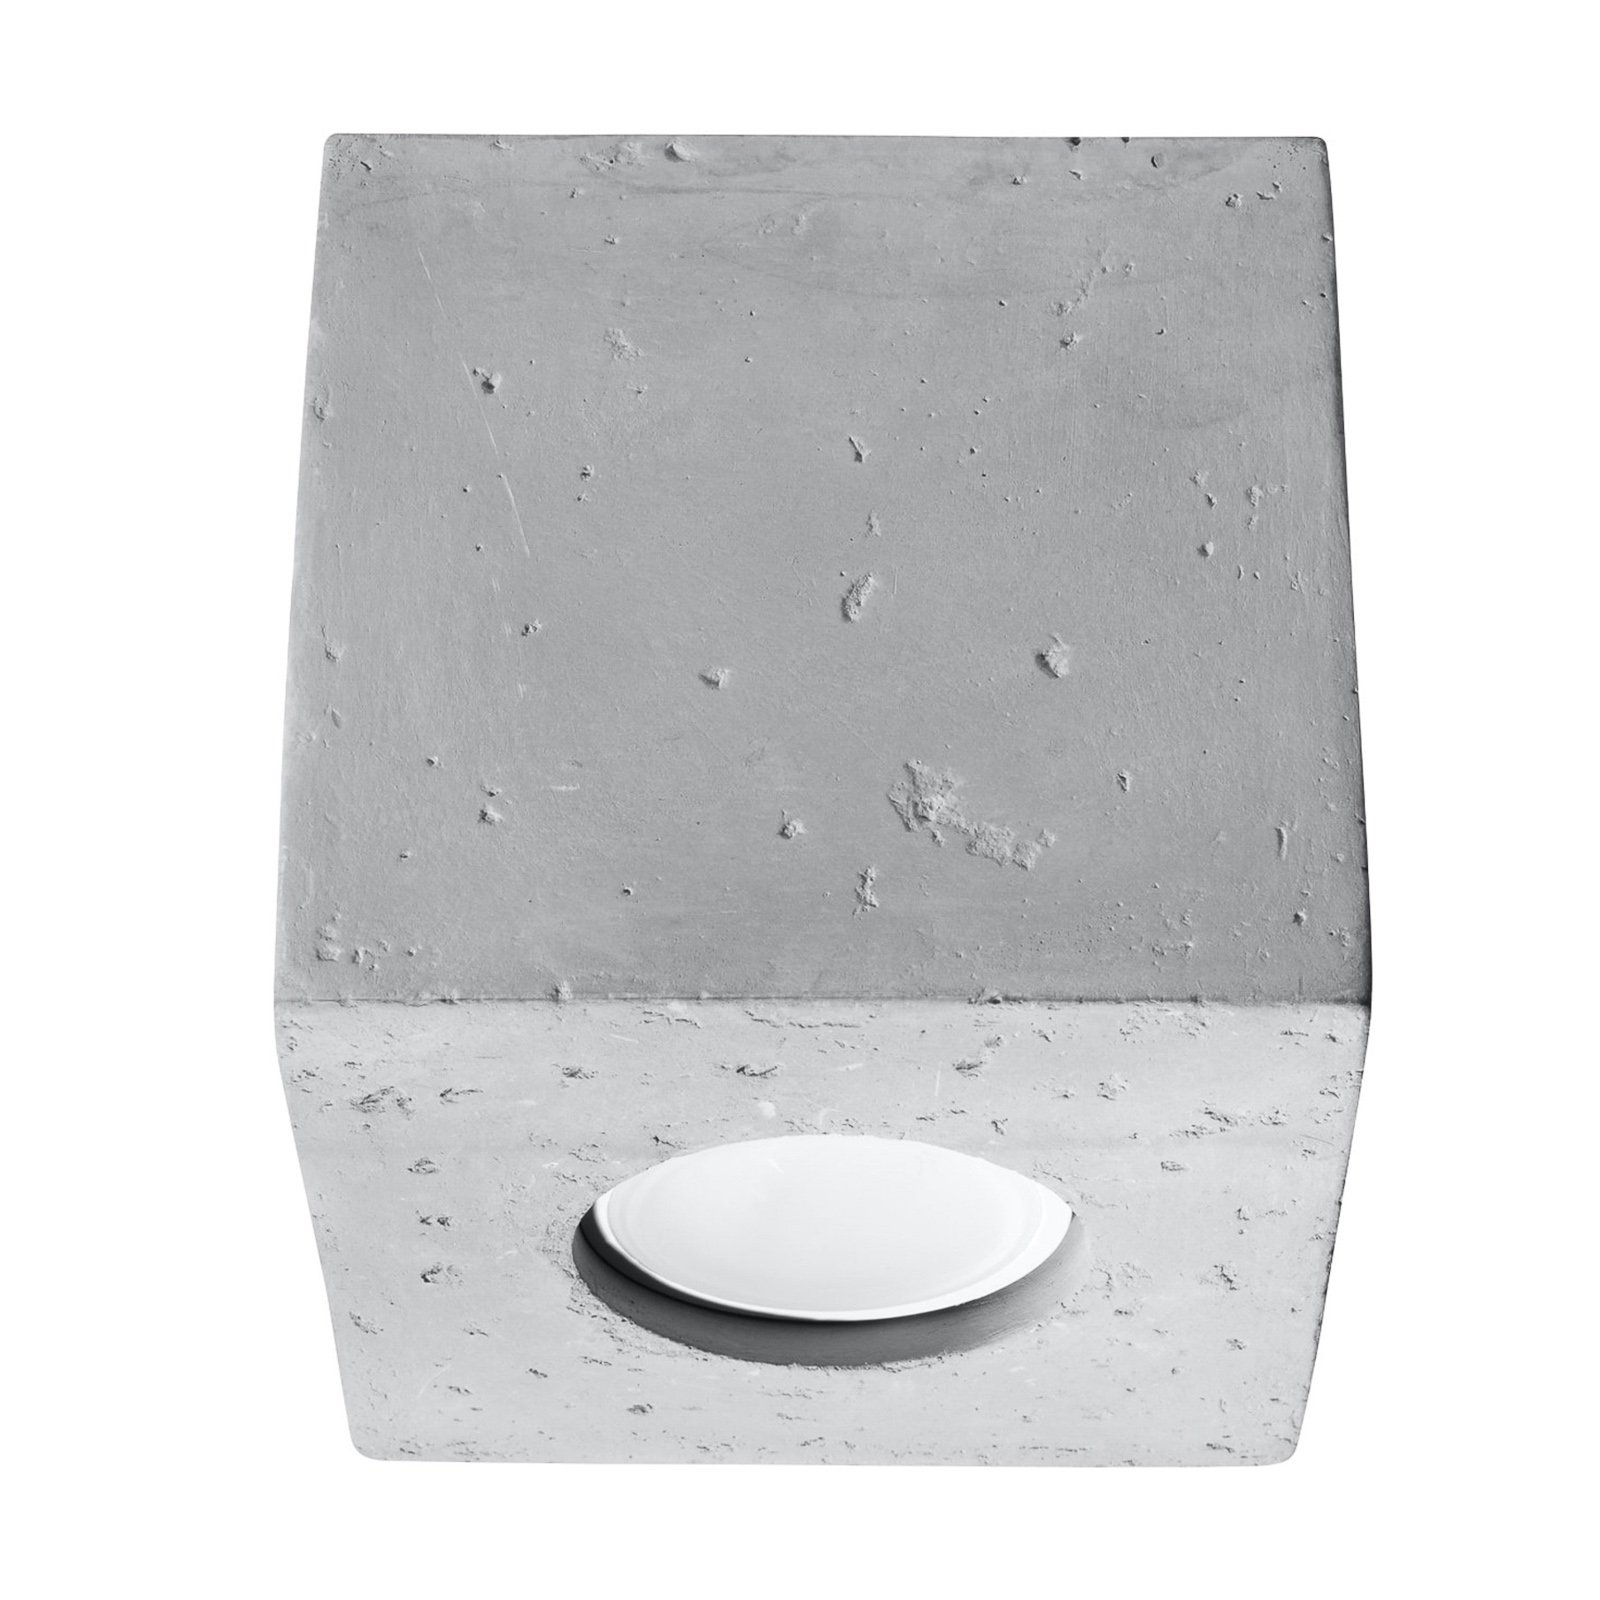 Ara taklampe i form av en betongkube på 10 cm x 10 cm